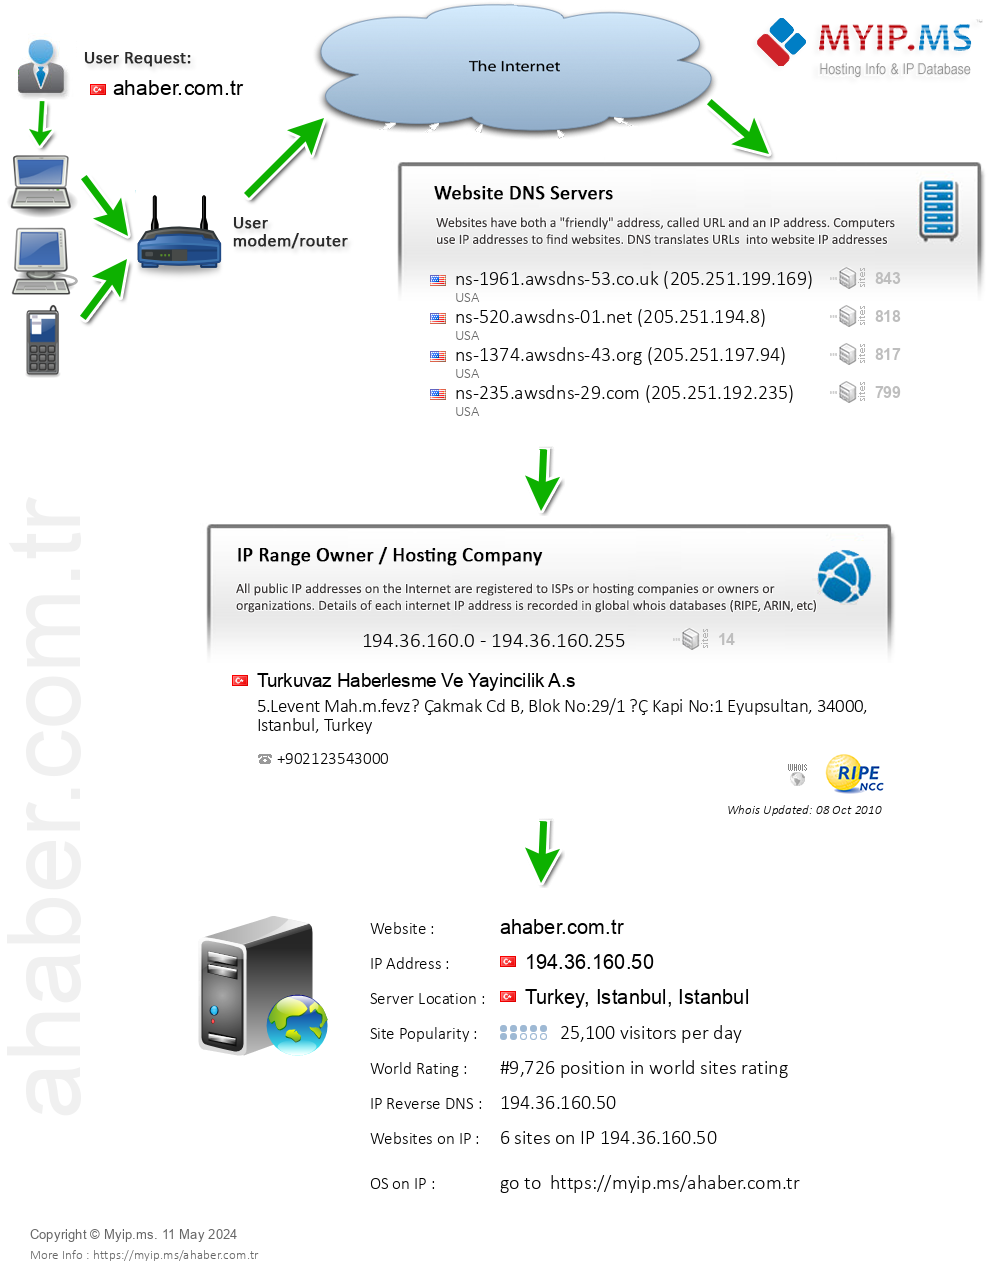 Ahaber.com.tr - Website Hosting Visual IP Diagram